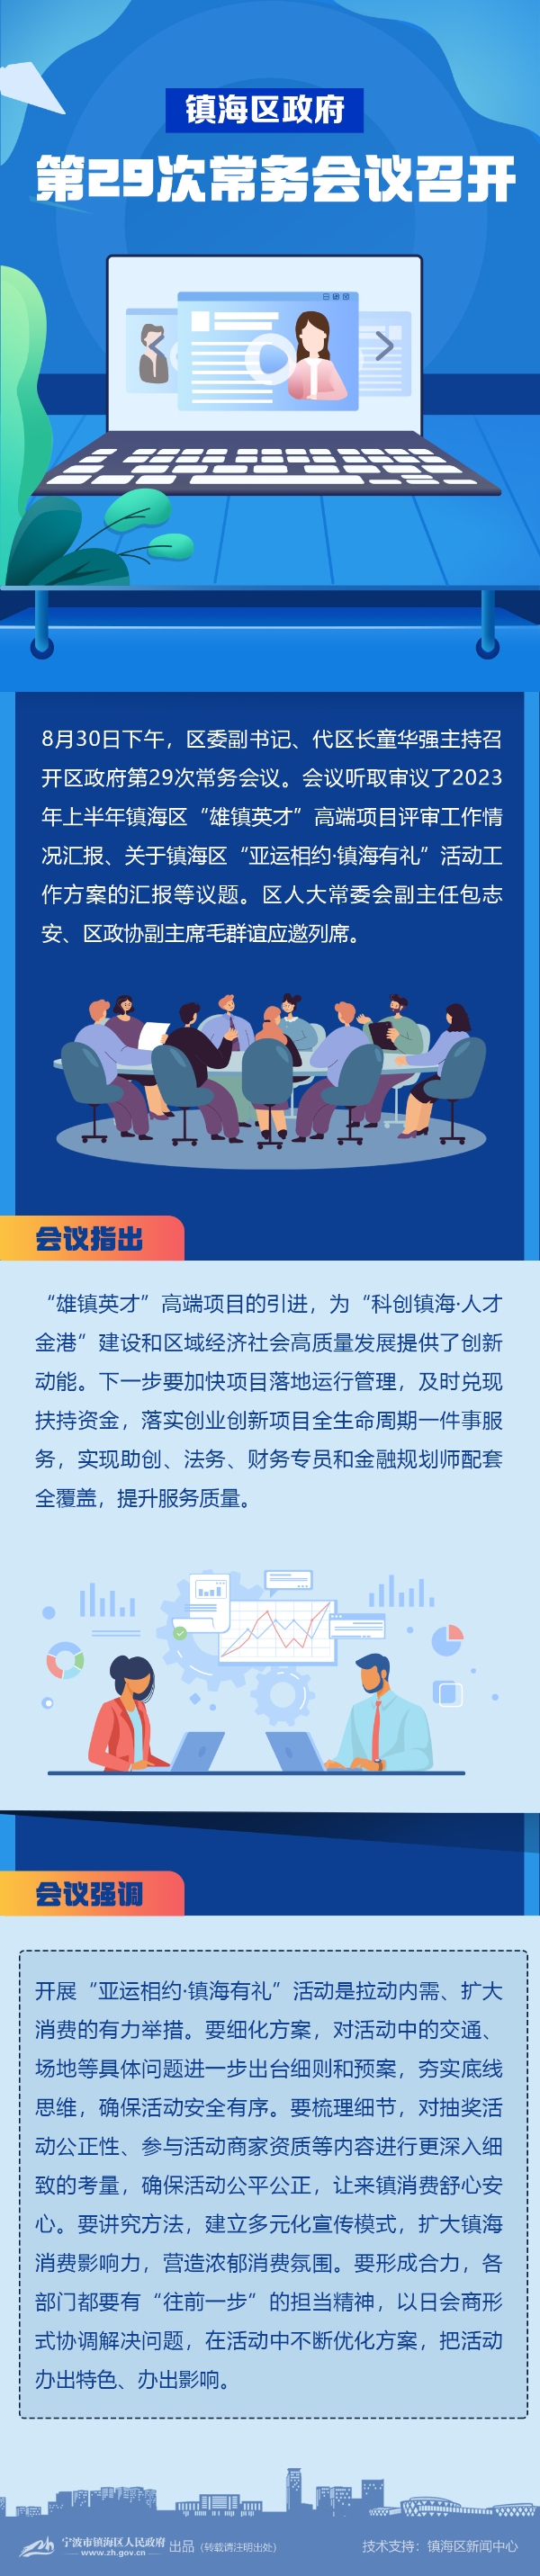 2023年8月30日镇海区人民政府第29次常务会议图解